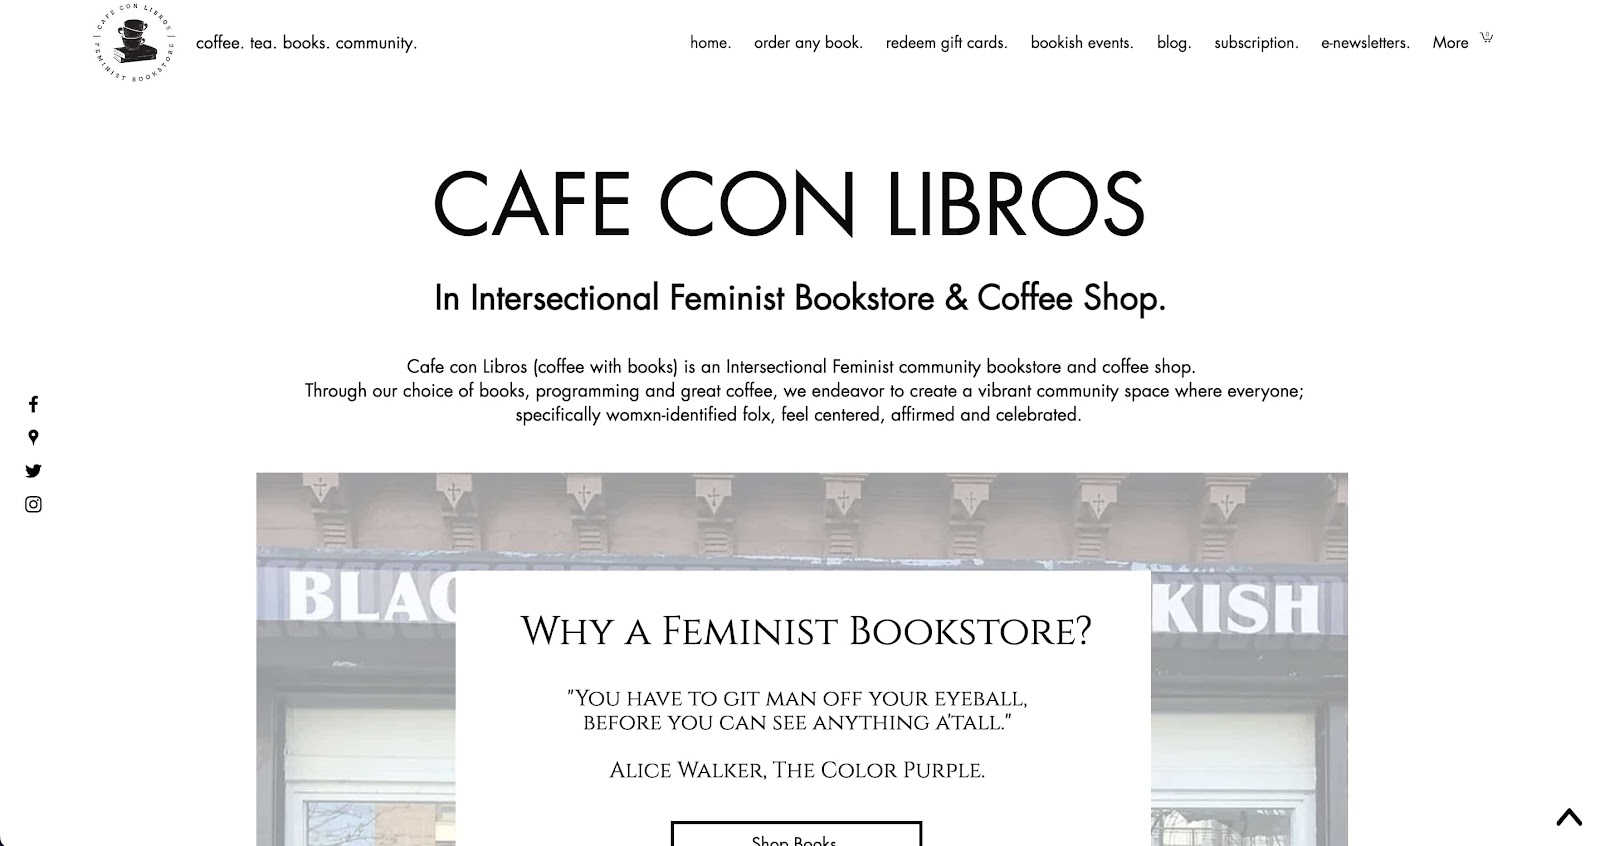 Cafe Con Libros company description